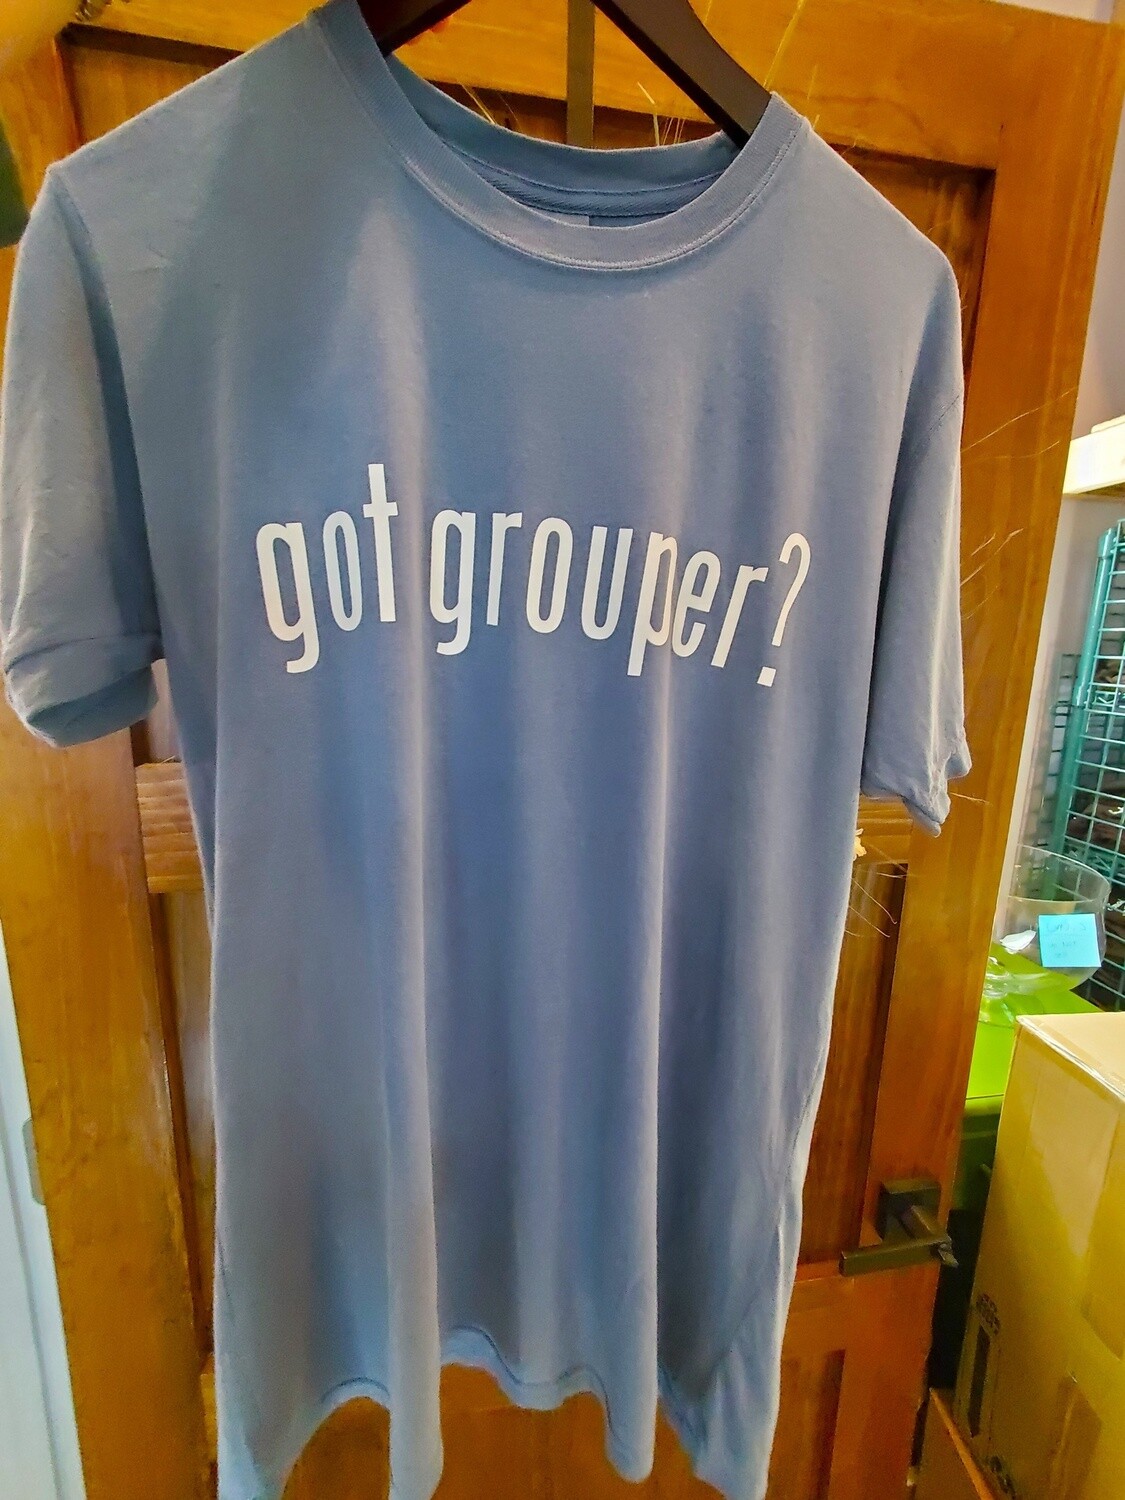 Got Grouper?